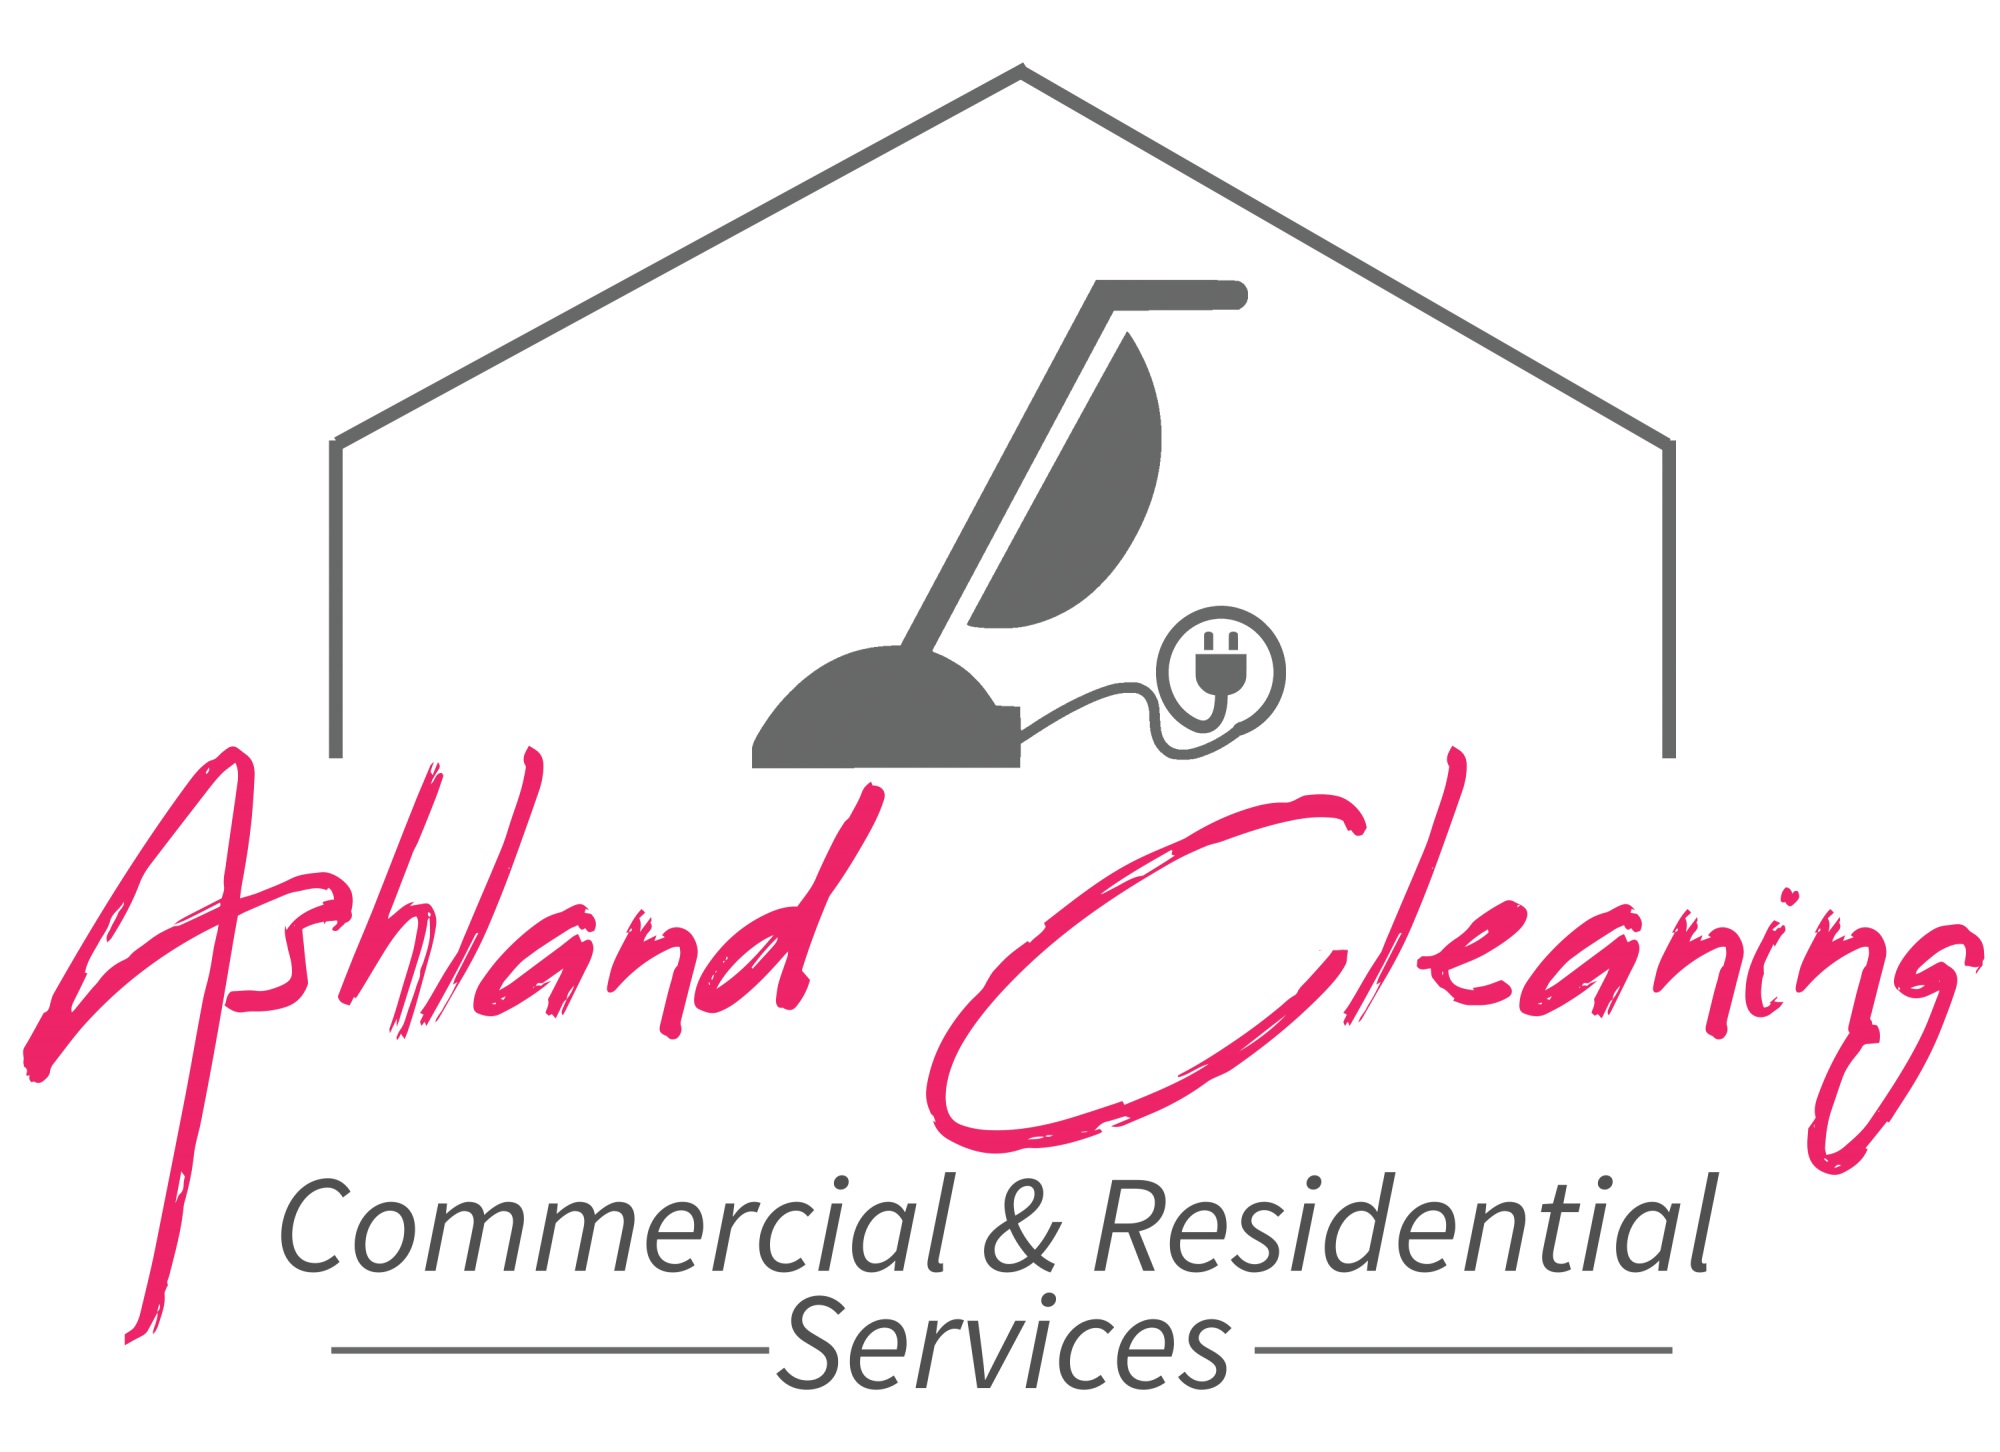 Ashland Cleaning